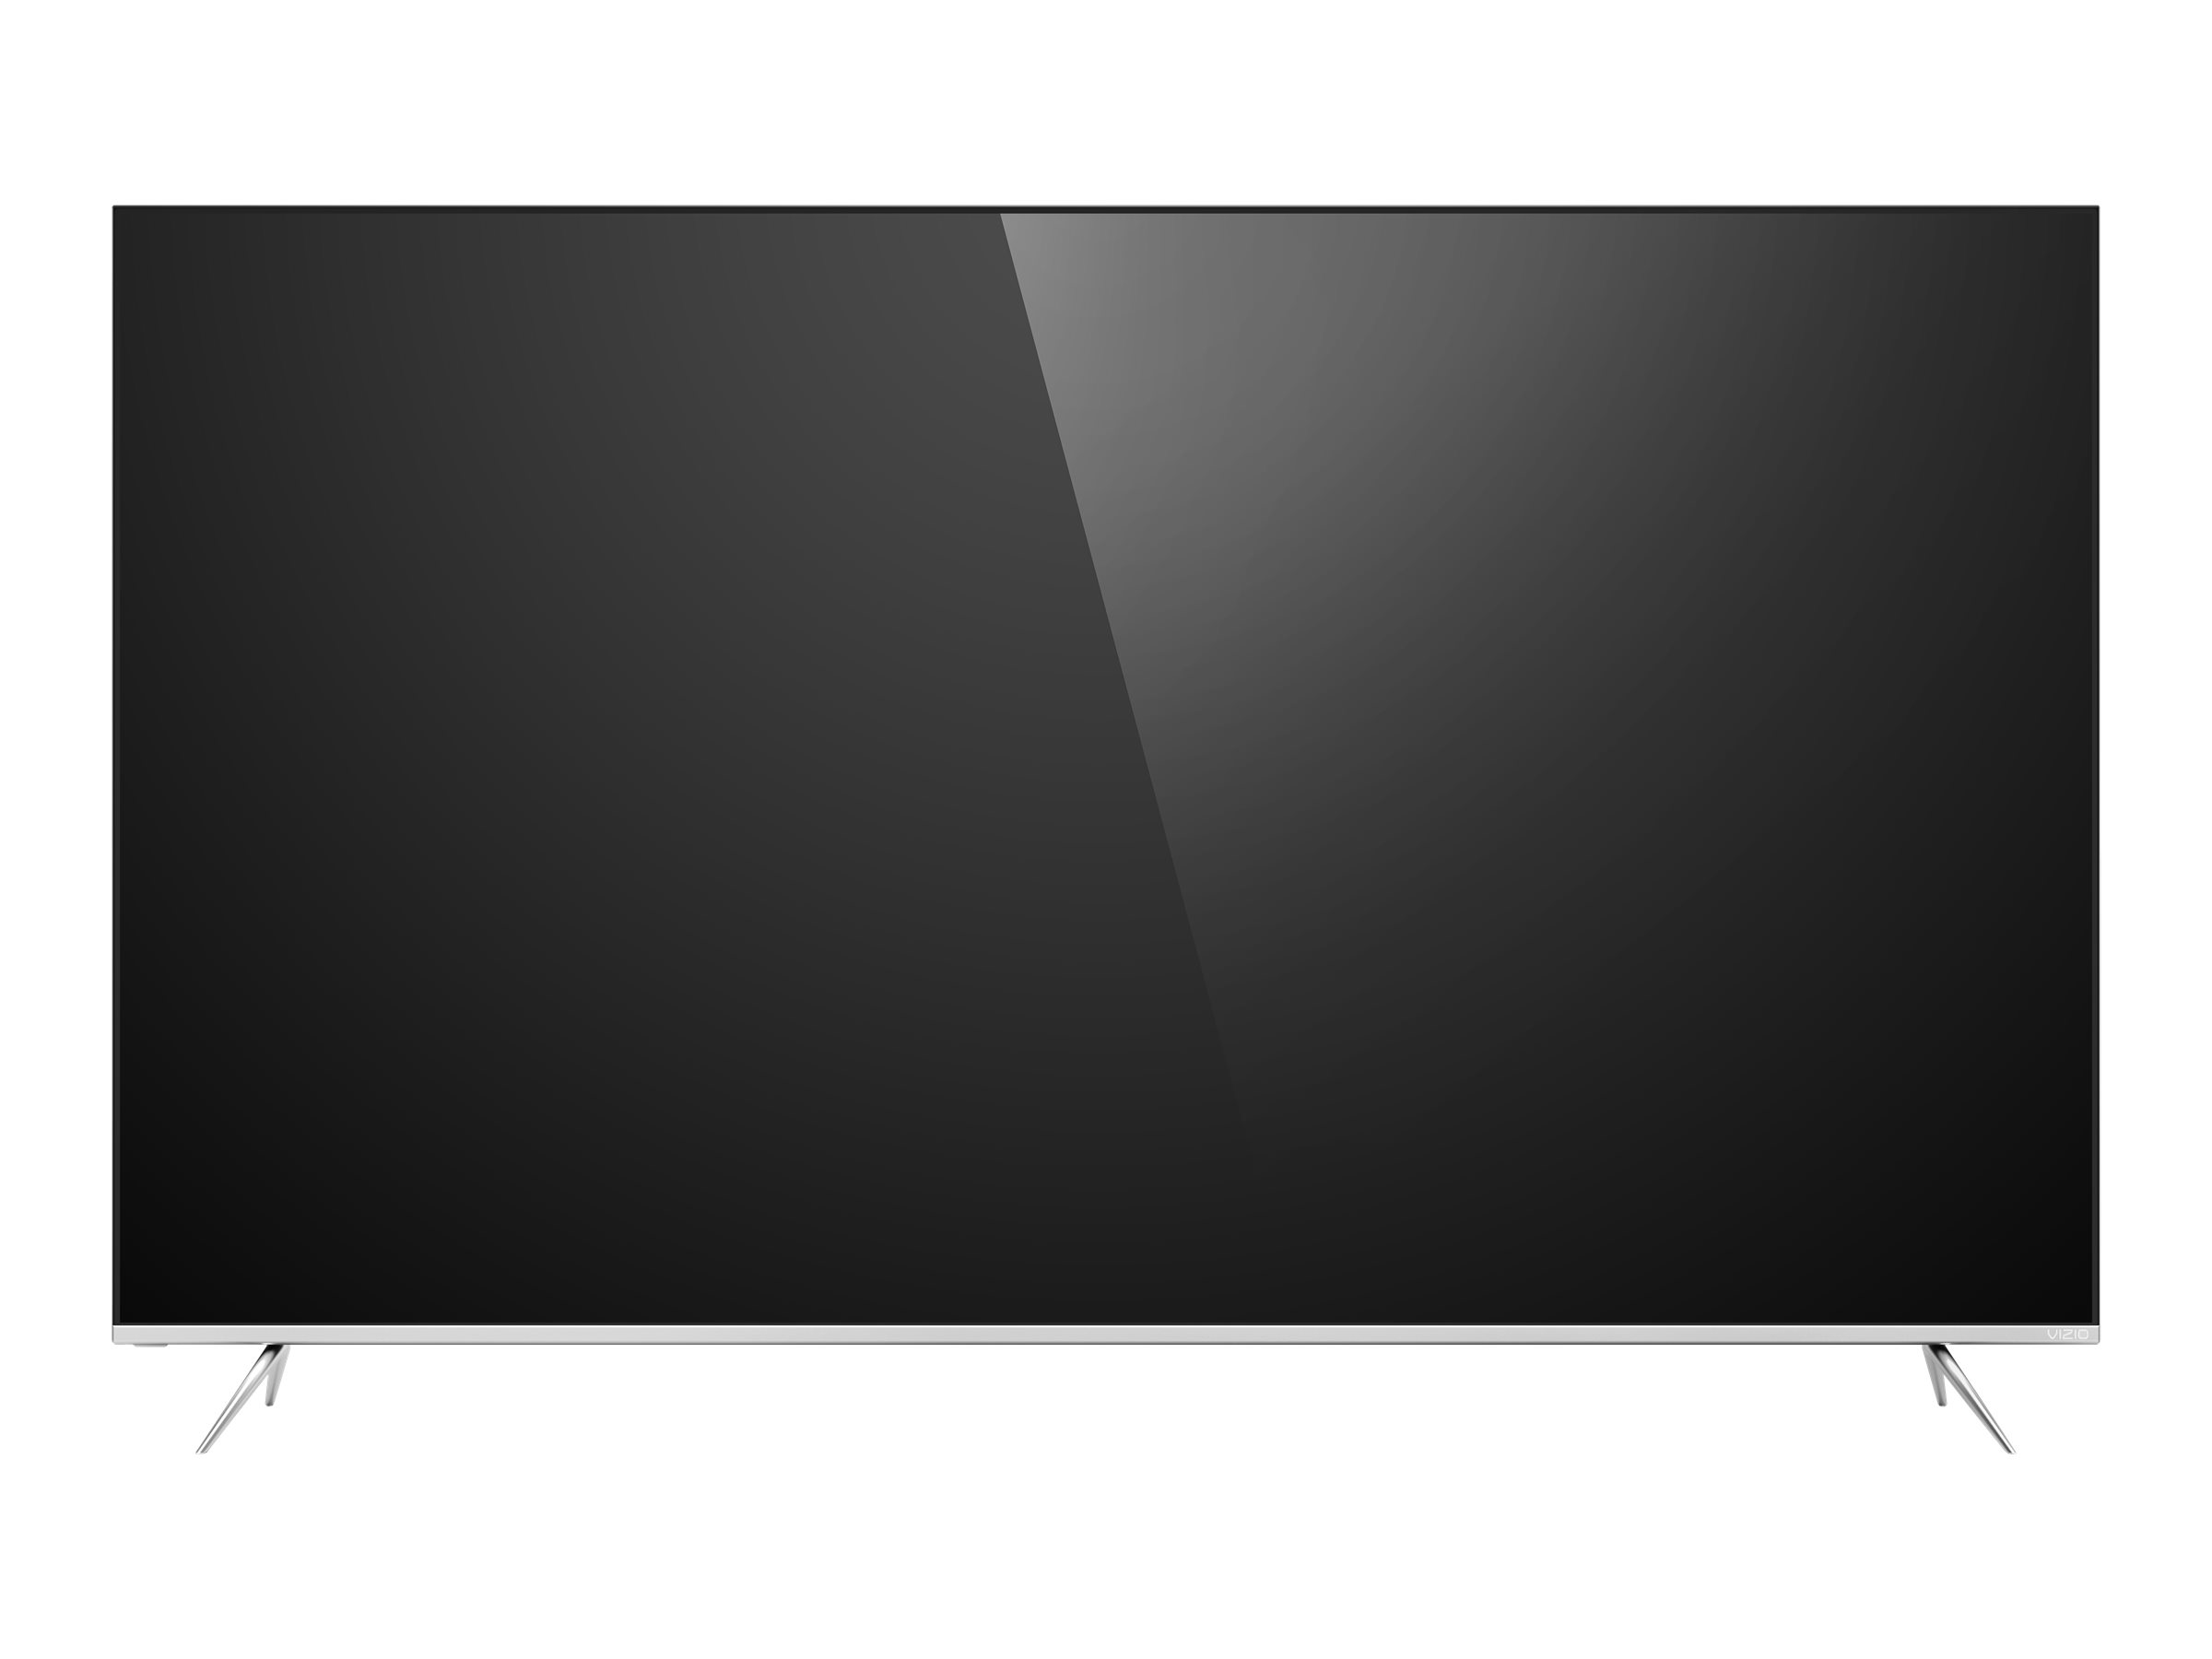 VIZIO P65-F1 - 65" Class (64.5" viewable) - P Series LED TV - Smart TV - SmartCast - 4K UHD (2160p) 3840 x 2160 - HDR - image 2 of 15